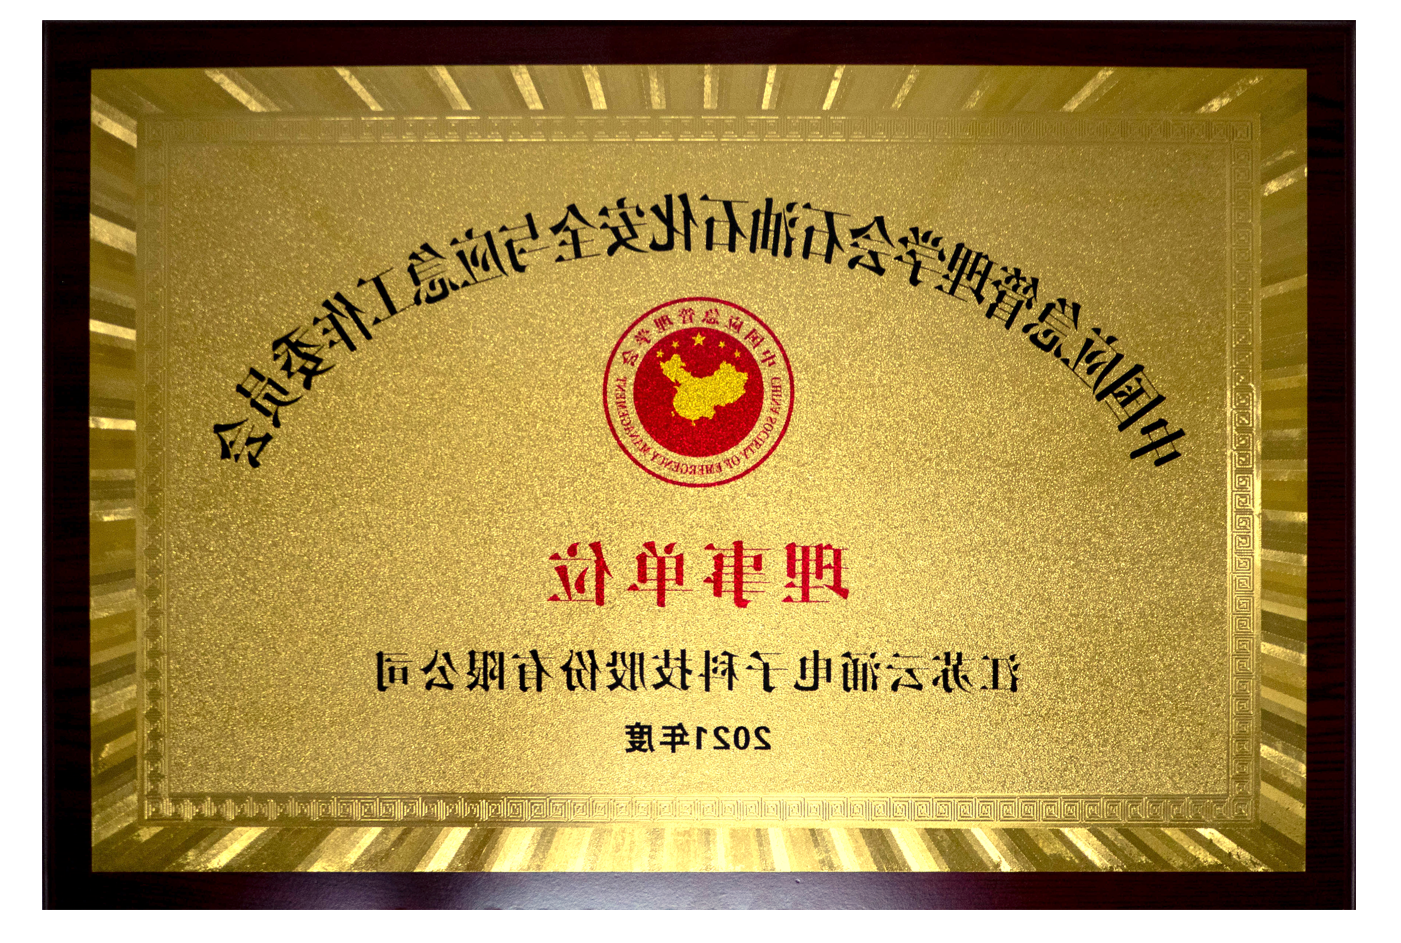 【cq9在线注册】cq9官方网站正式当选石安委理事单位